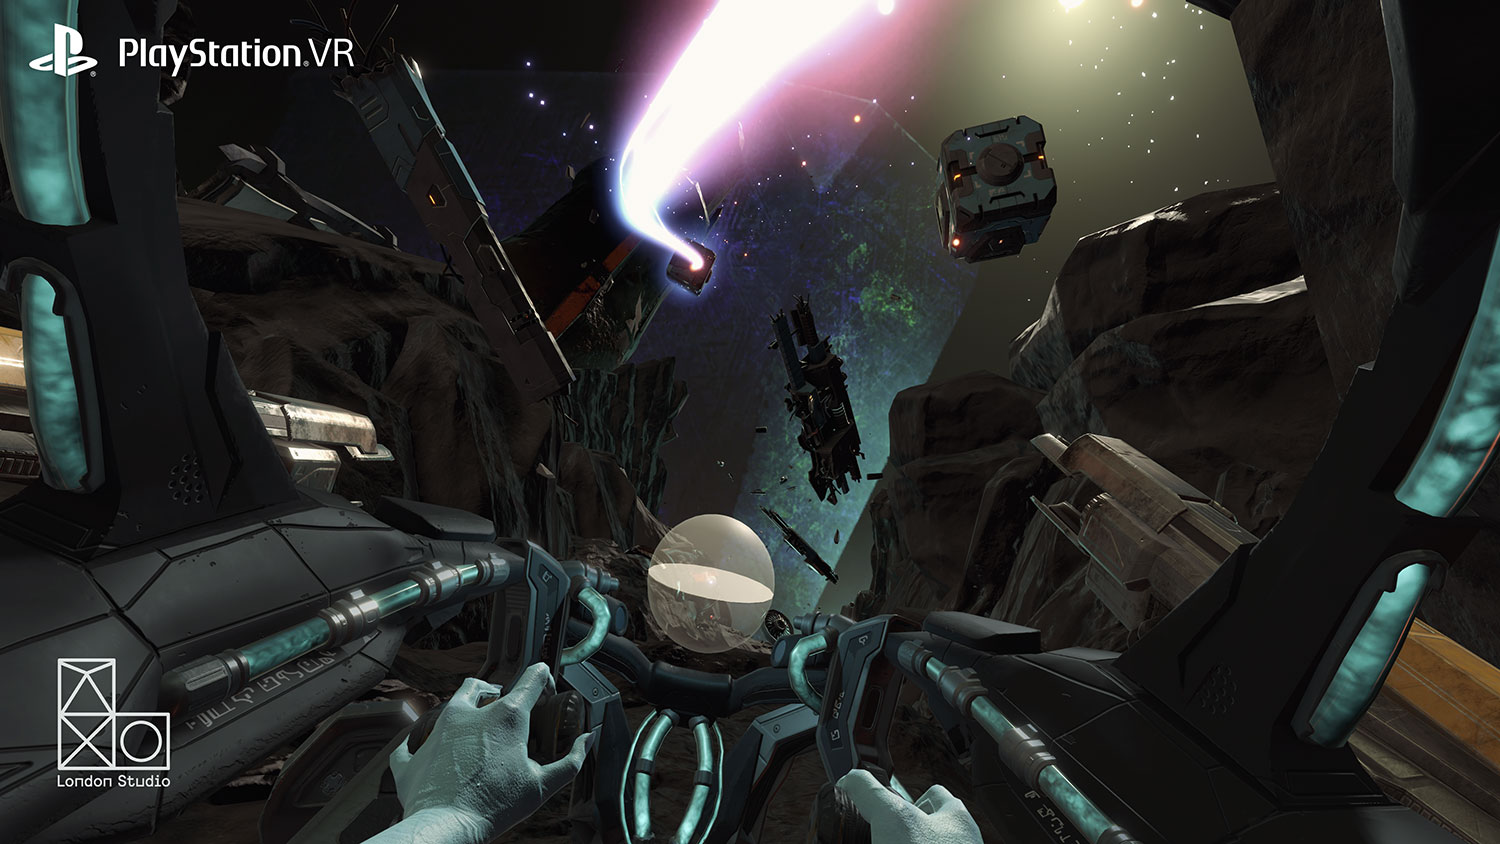 PS4 VR Screenshots